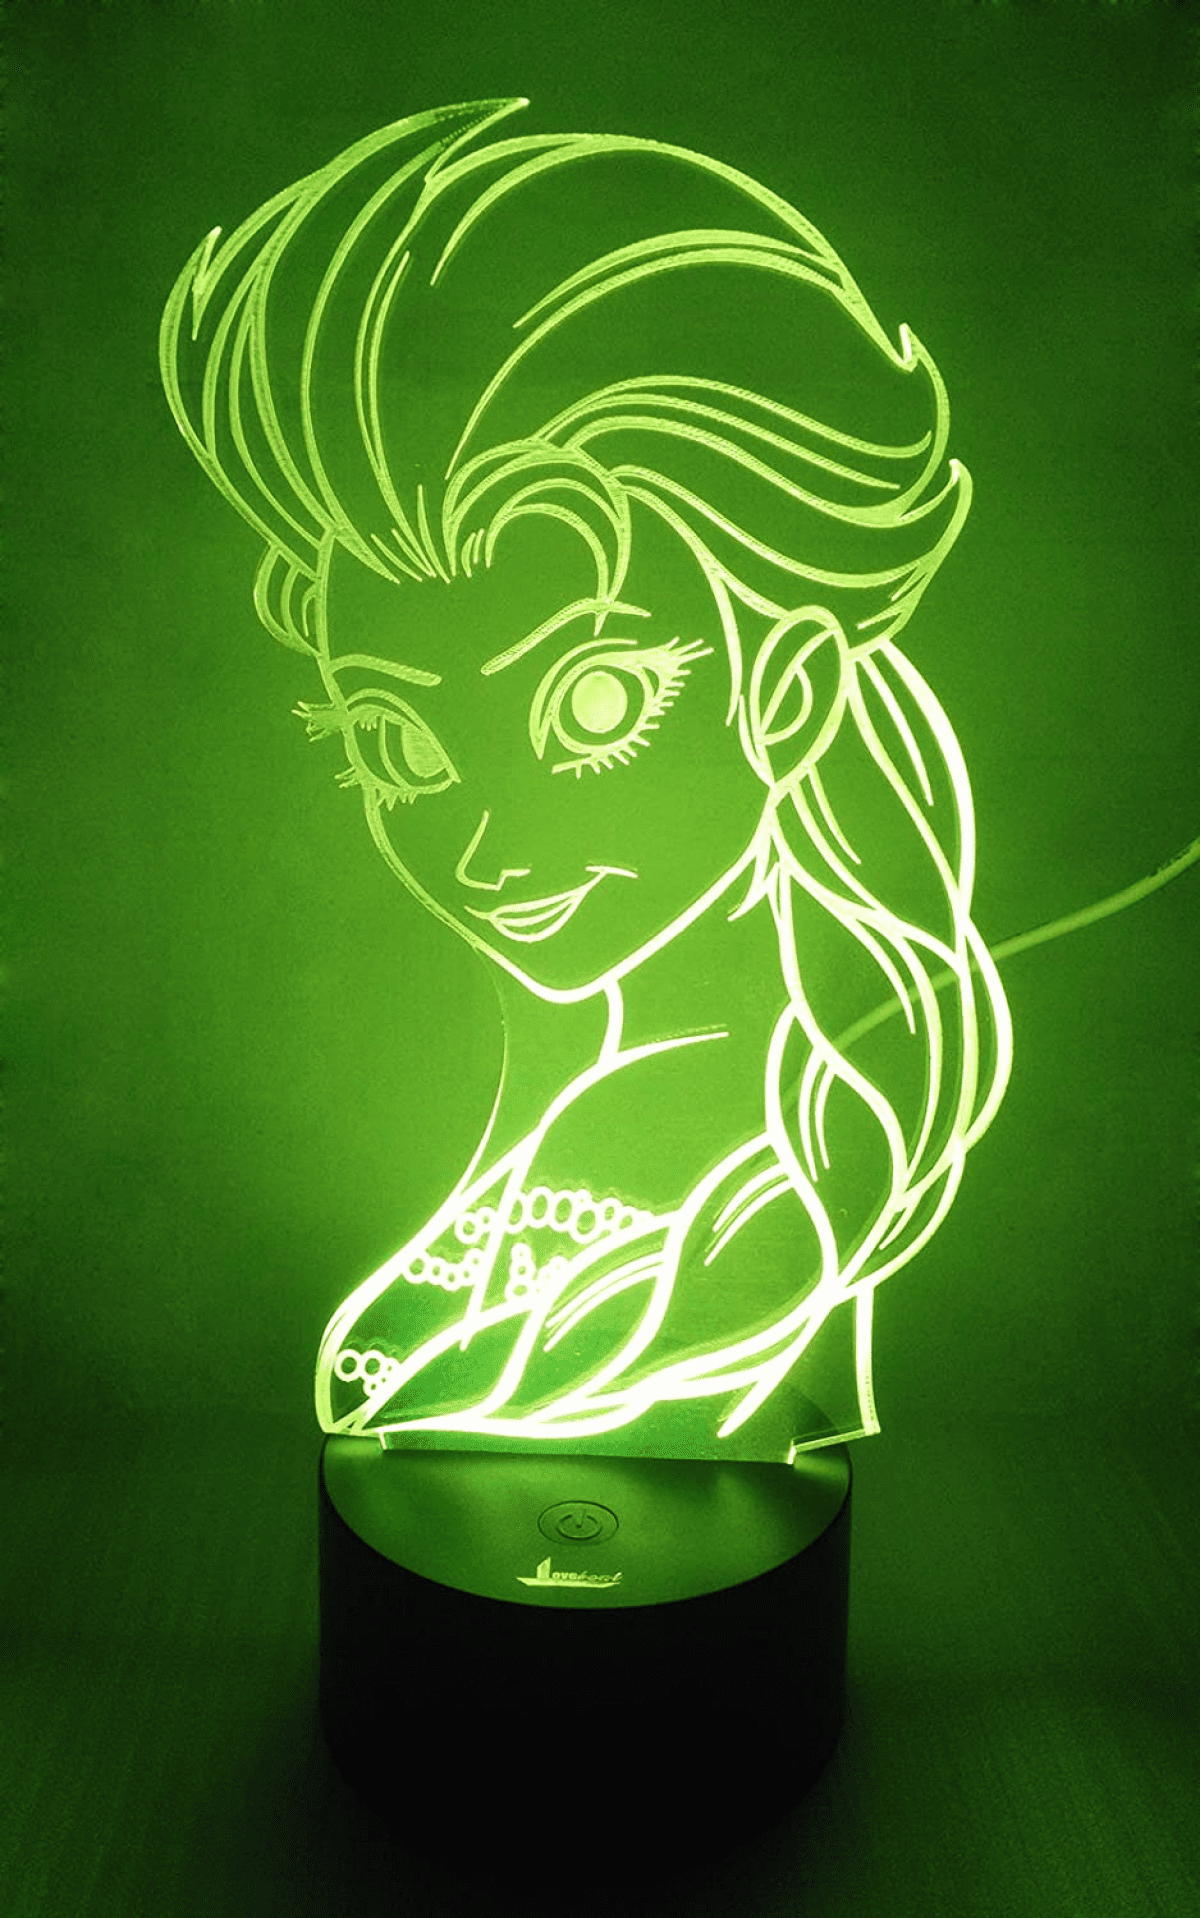 Frozen Elsa 3D illusion 7 Color LED Light Night Change Table Desk Lamp 